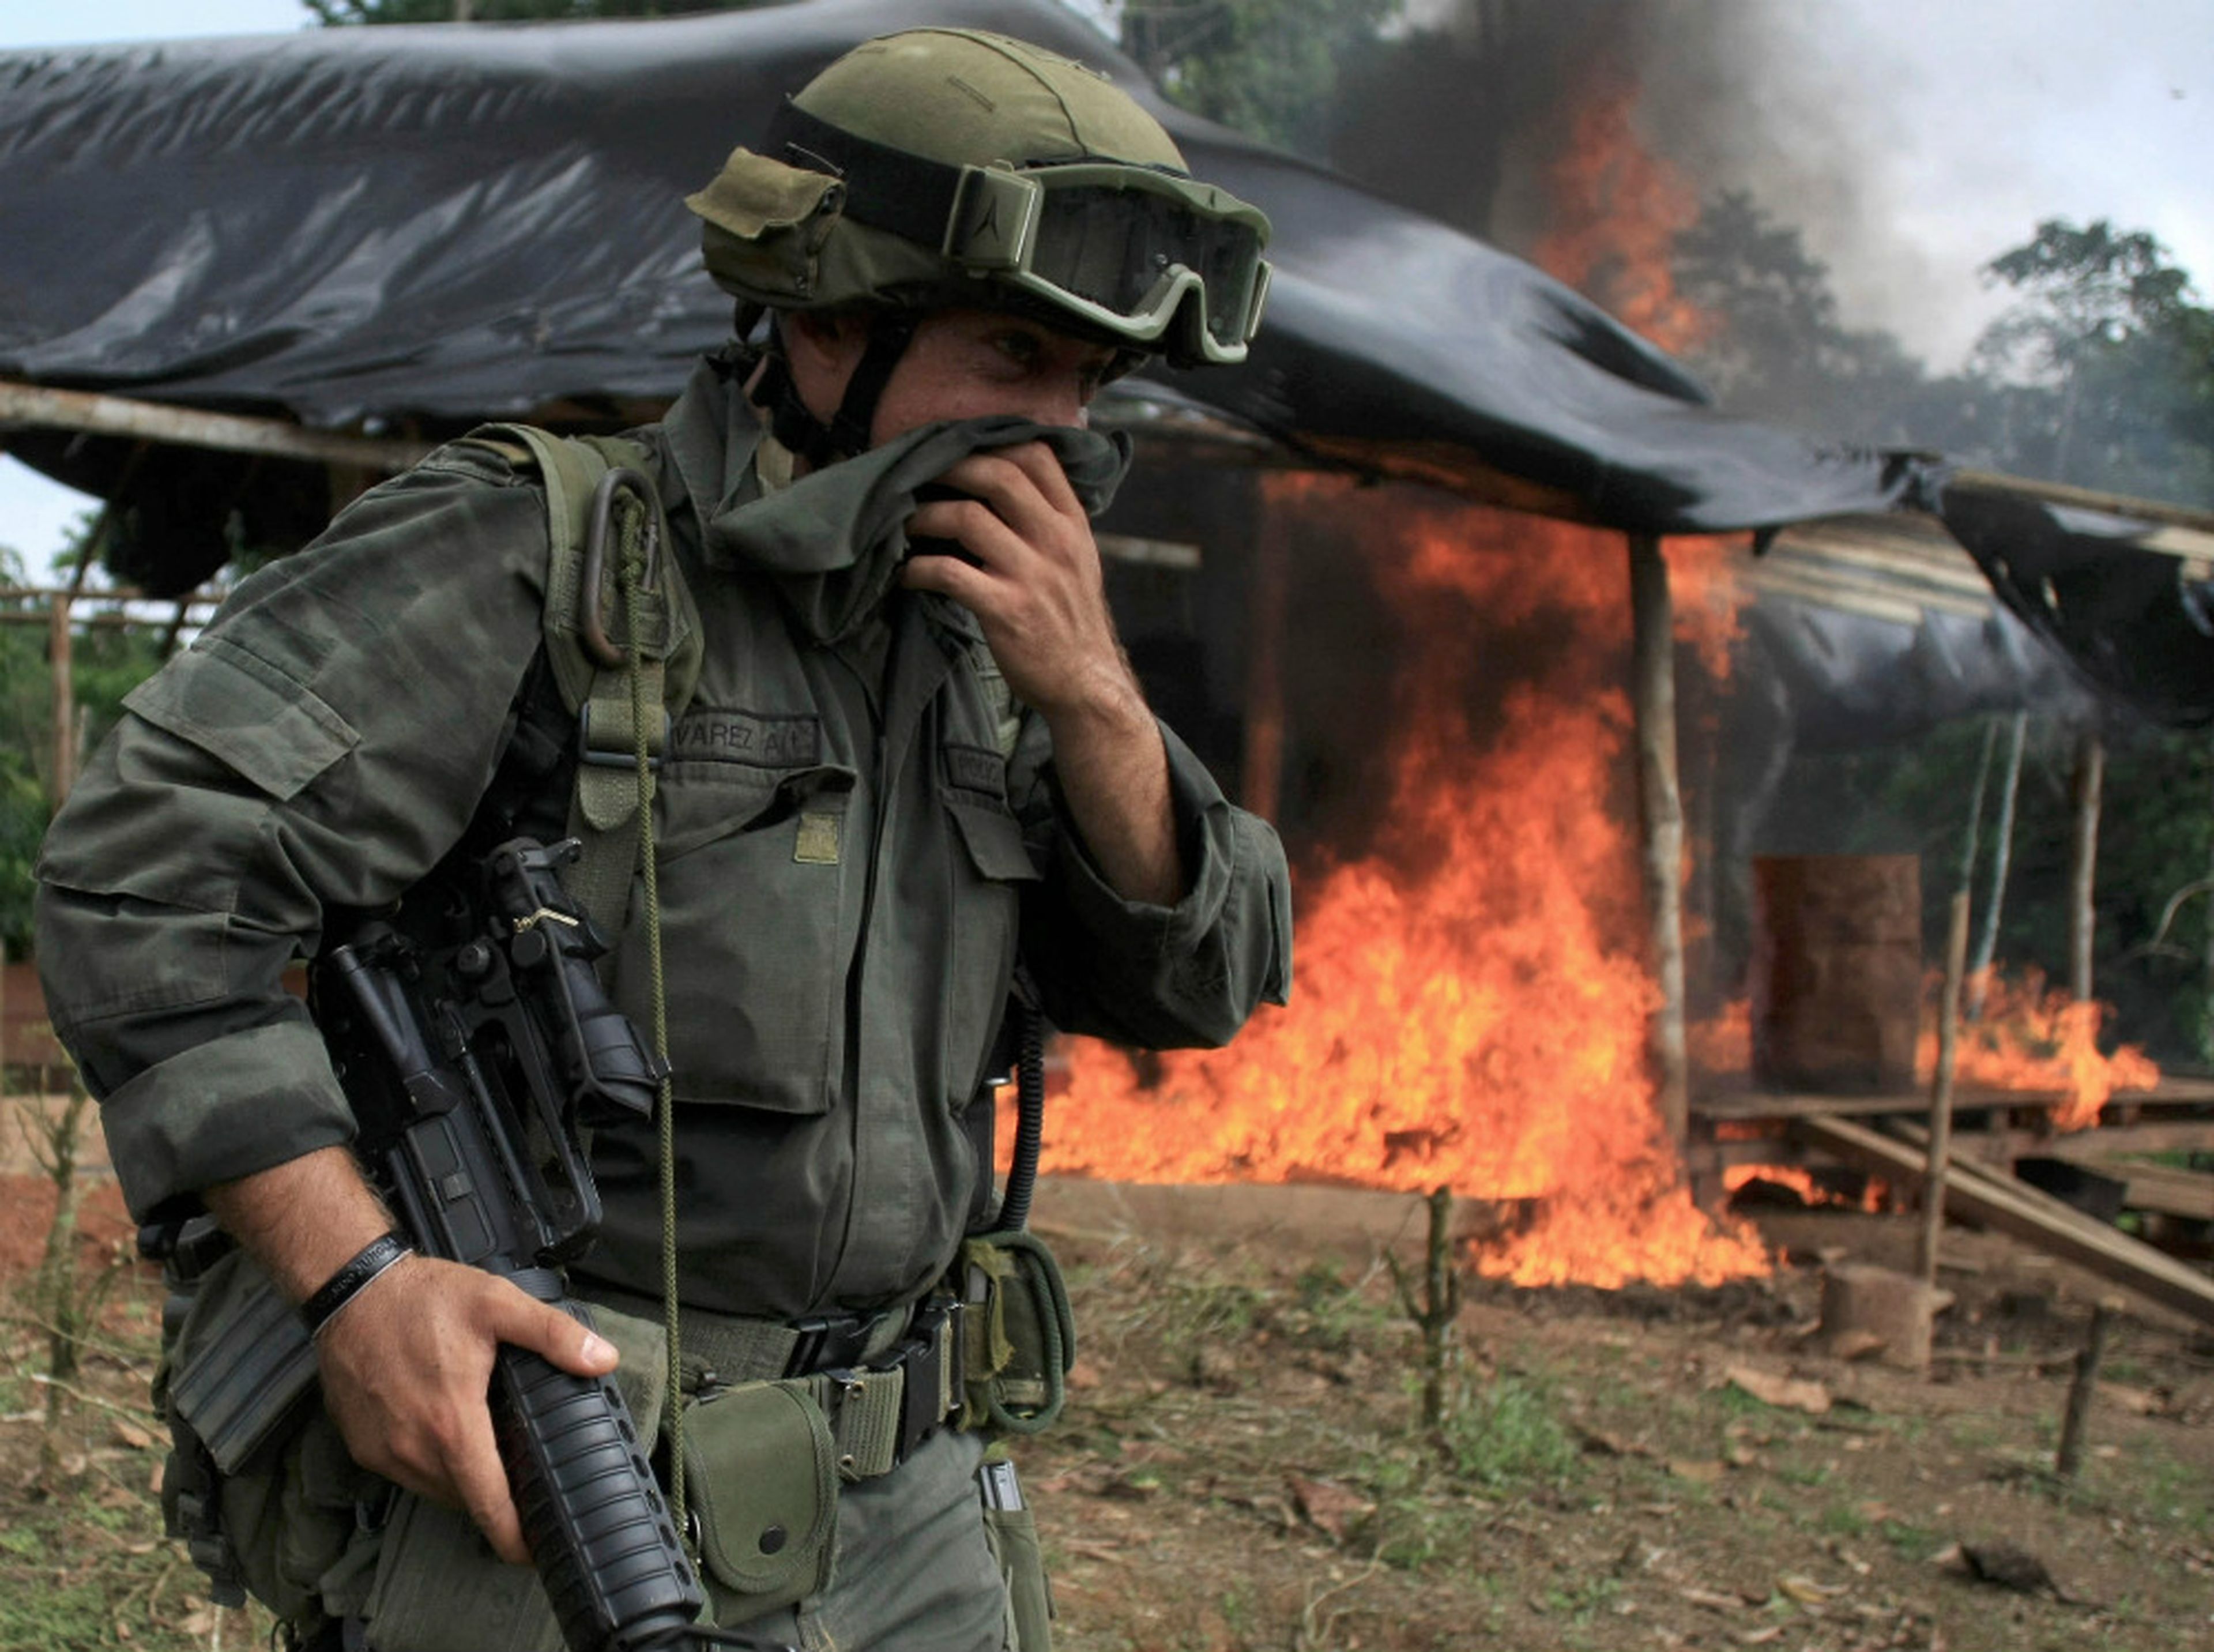 Un miembro de una brigada antinarcóticos frente a una cabaña en llamas durante una redada para destruir un laboratorio de coca cerca de Tumaco, región situada en el sur de Colombia, el 8 de junio de 2008.